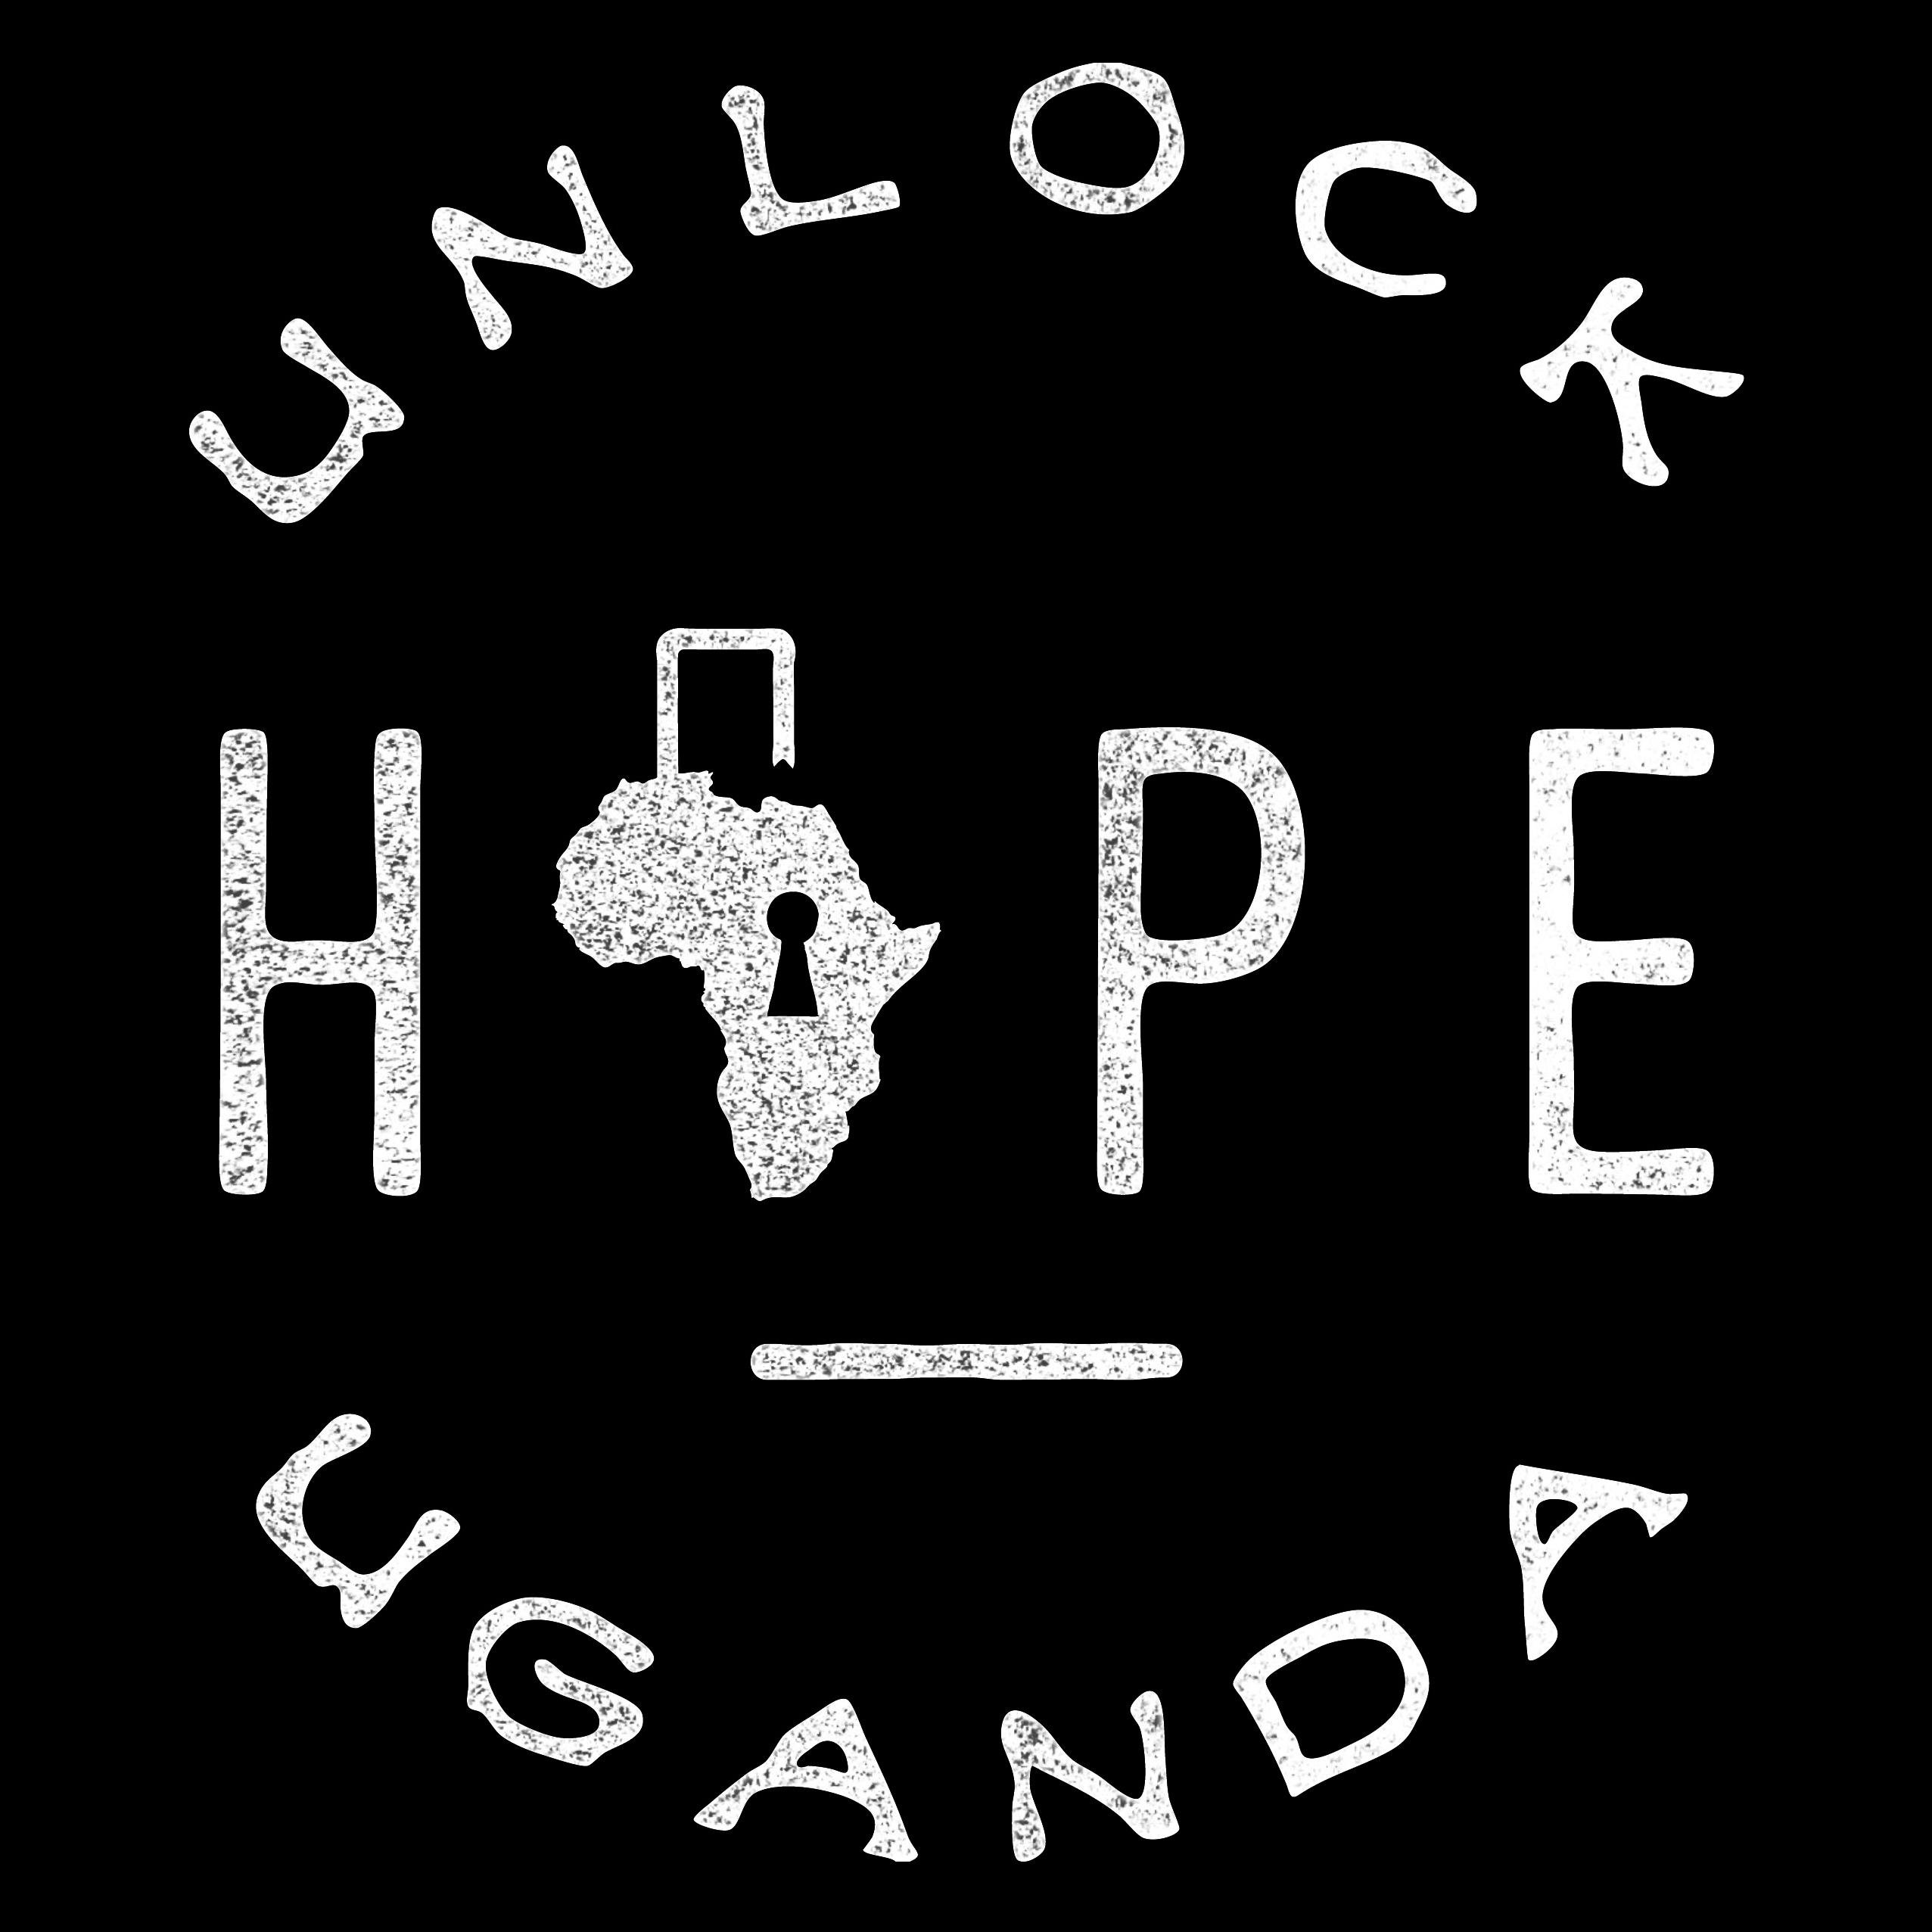 Unlock Hope for girls in Uganda. Every purchase provides food, shelter & an education. http://t.co/kAJNjMoyEx